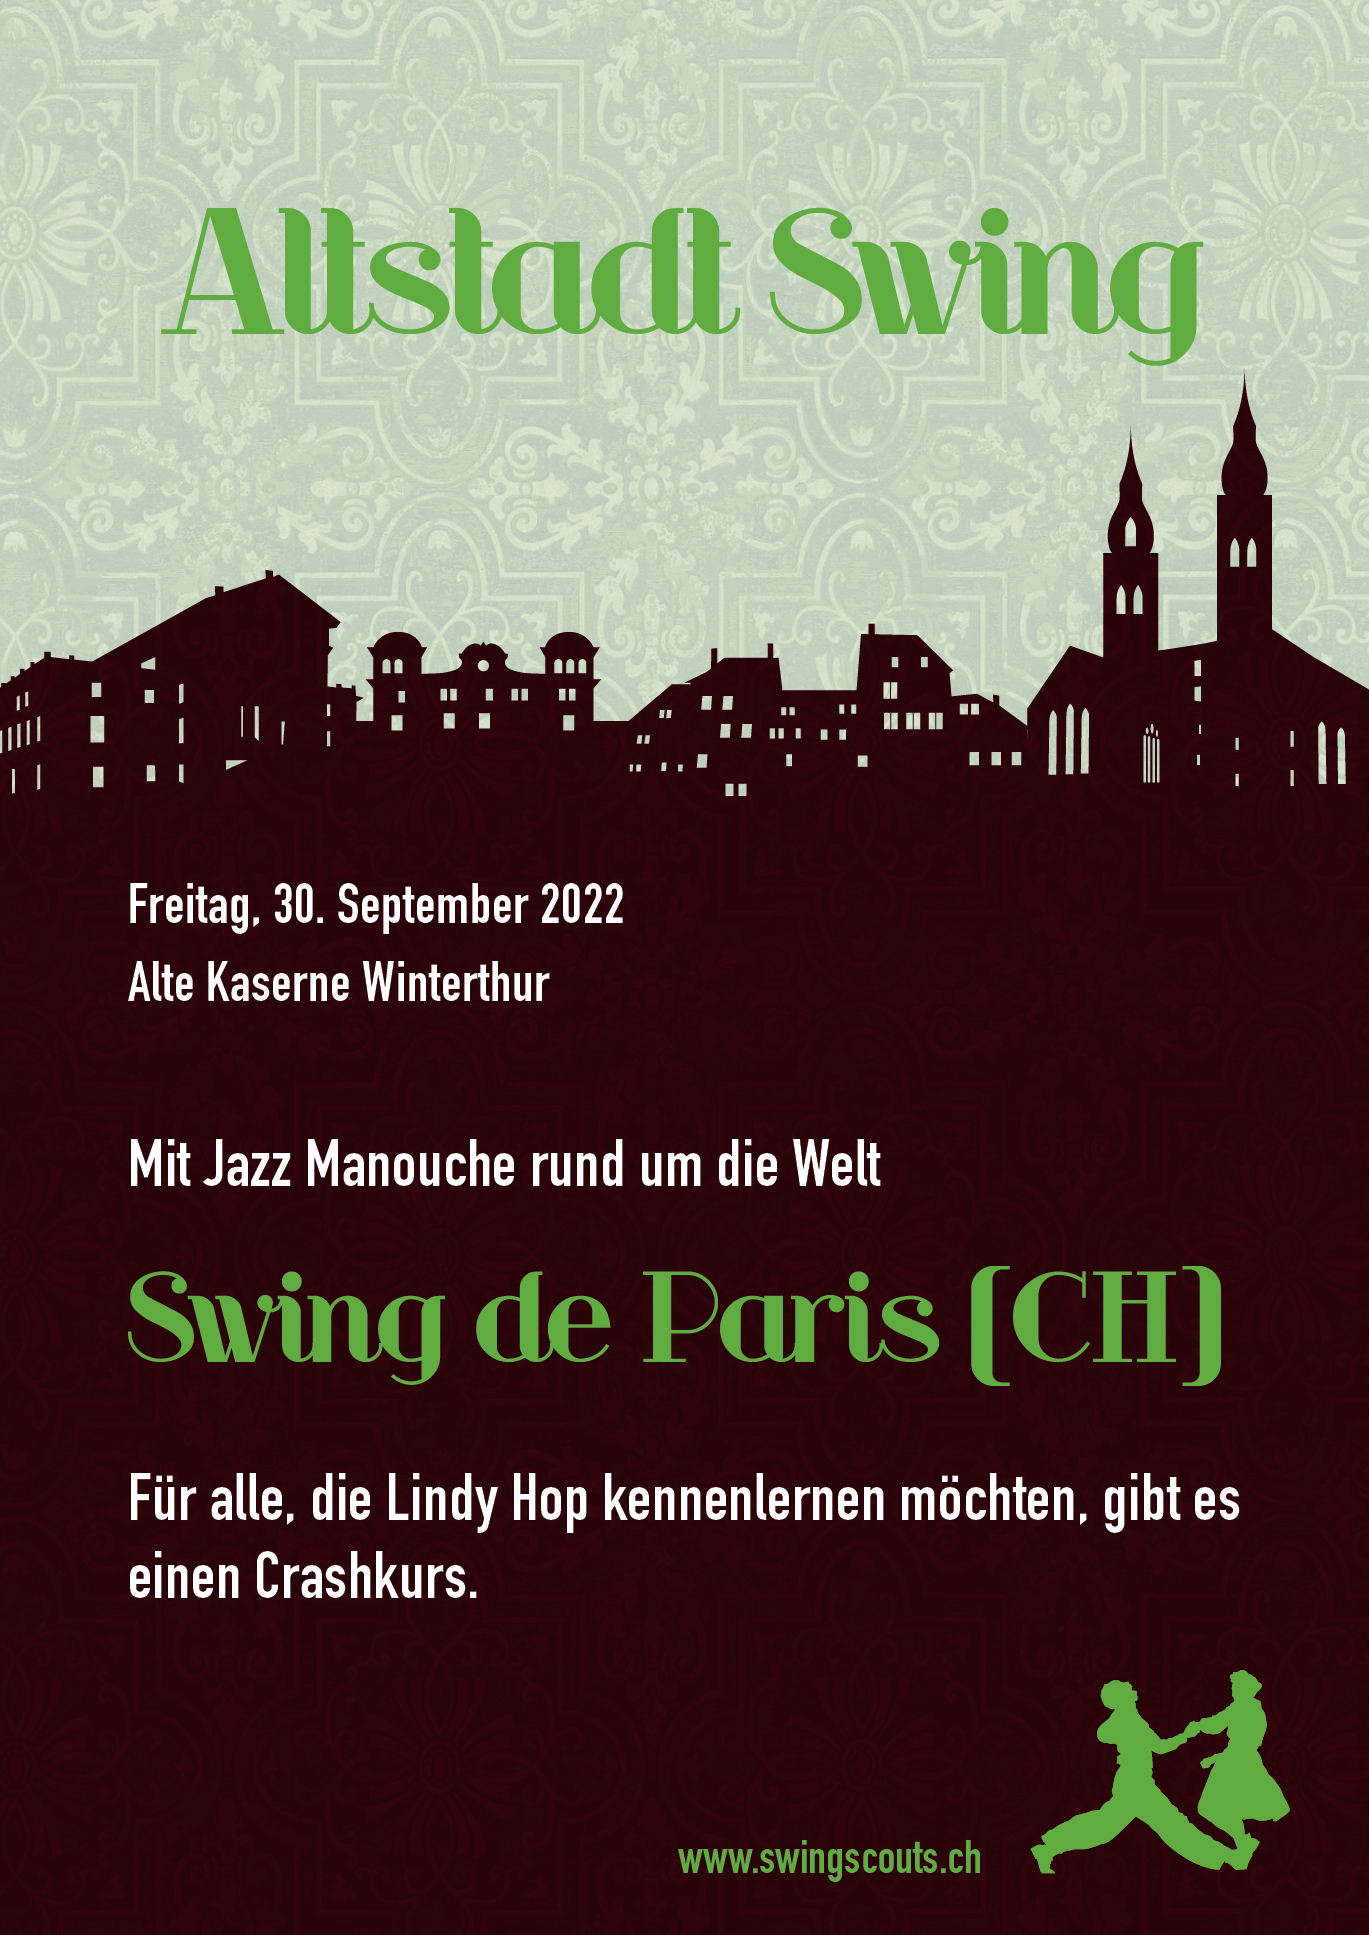 Fr. 30.09.2022 # Altstadt Swing mit Swing de Paris